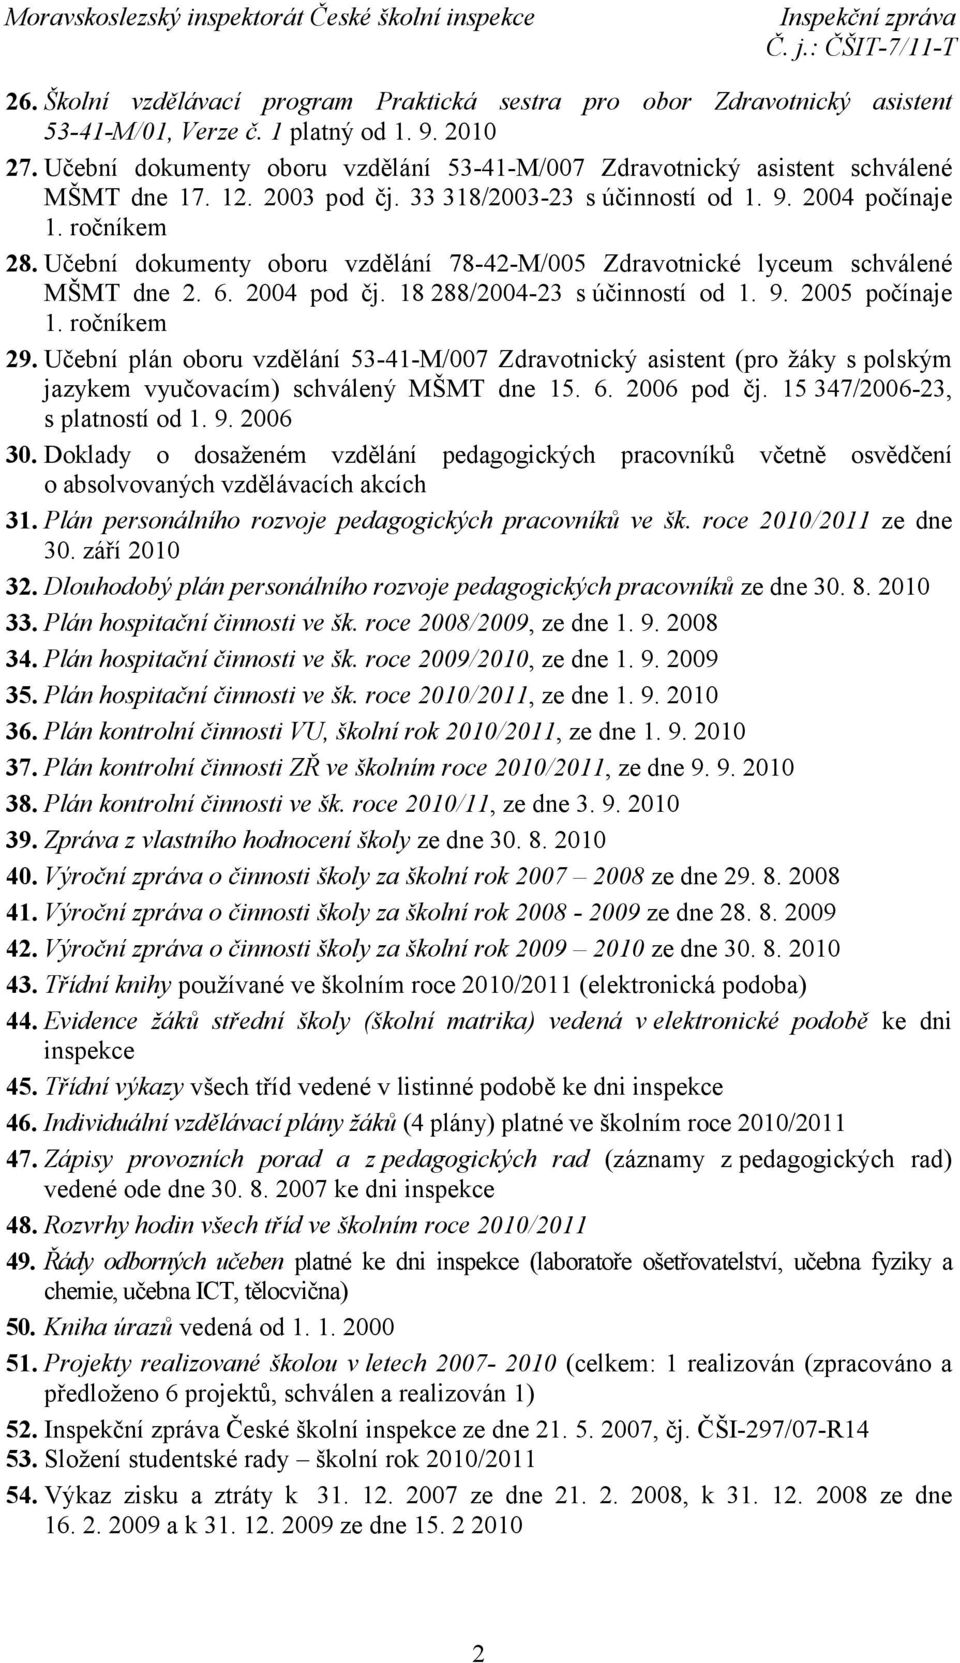 Učební dokumenty oboru vzdělání 78-42-M/005 Zdravotnické lyceum schválené MŠMT dne 2. 6. 2004 pod čj. 18 288/2004-23 s účinností od 1. 9. 2005 počínaje 1. ročníkem 29.